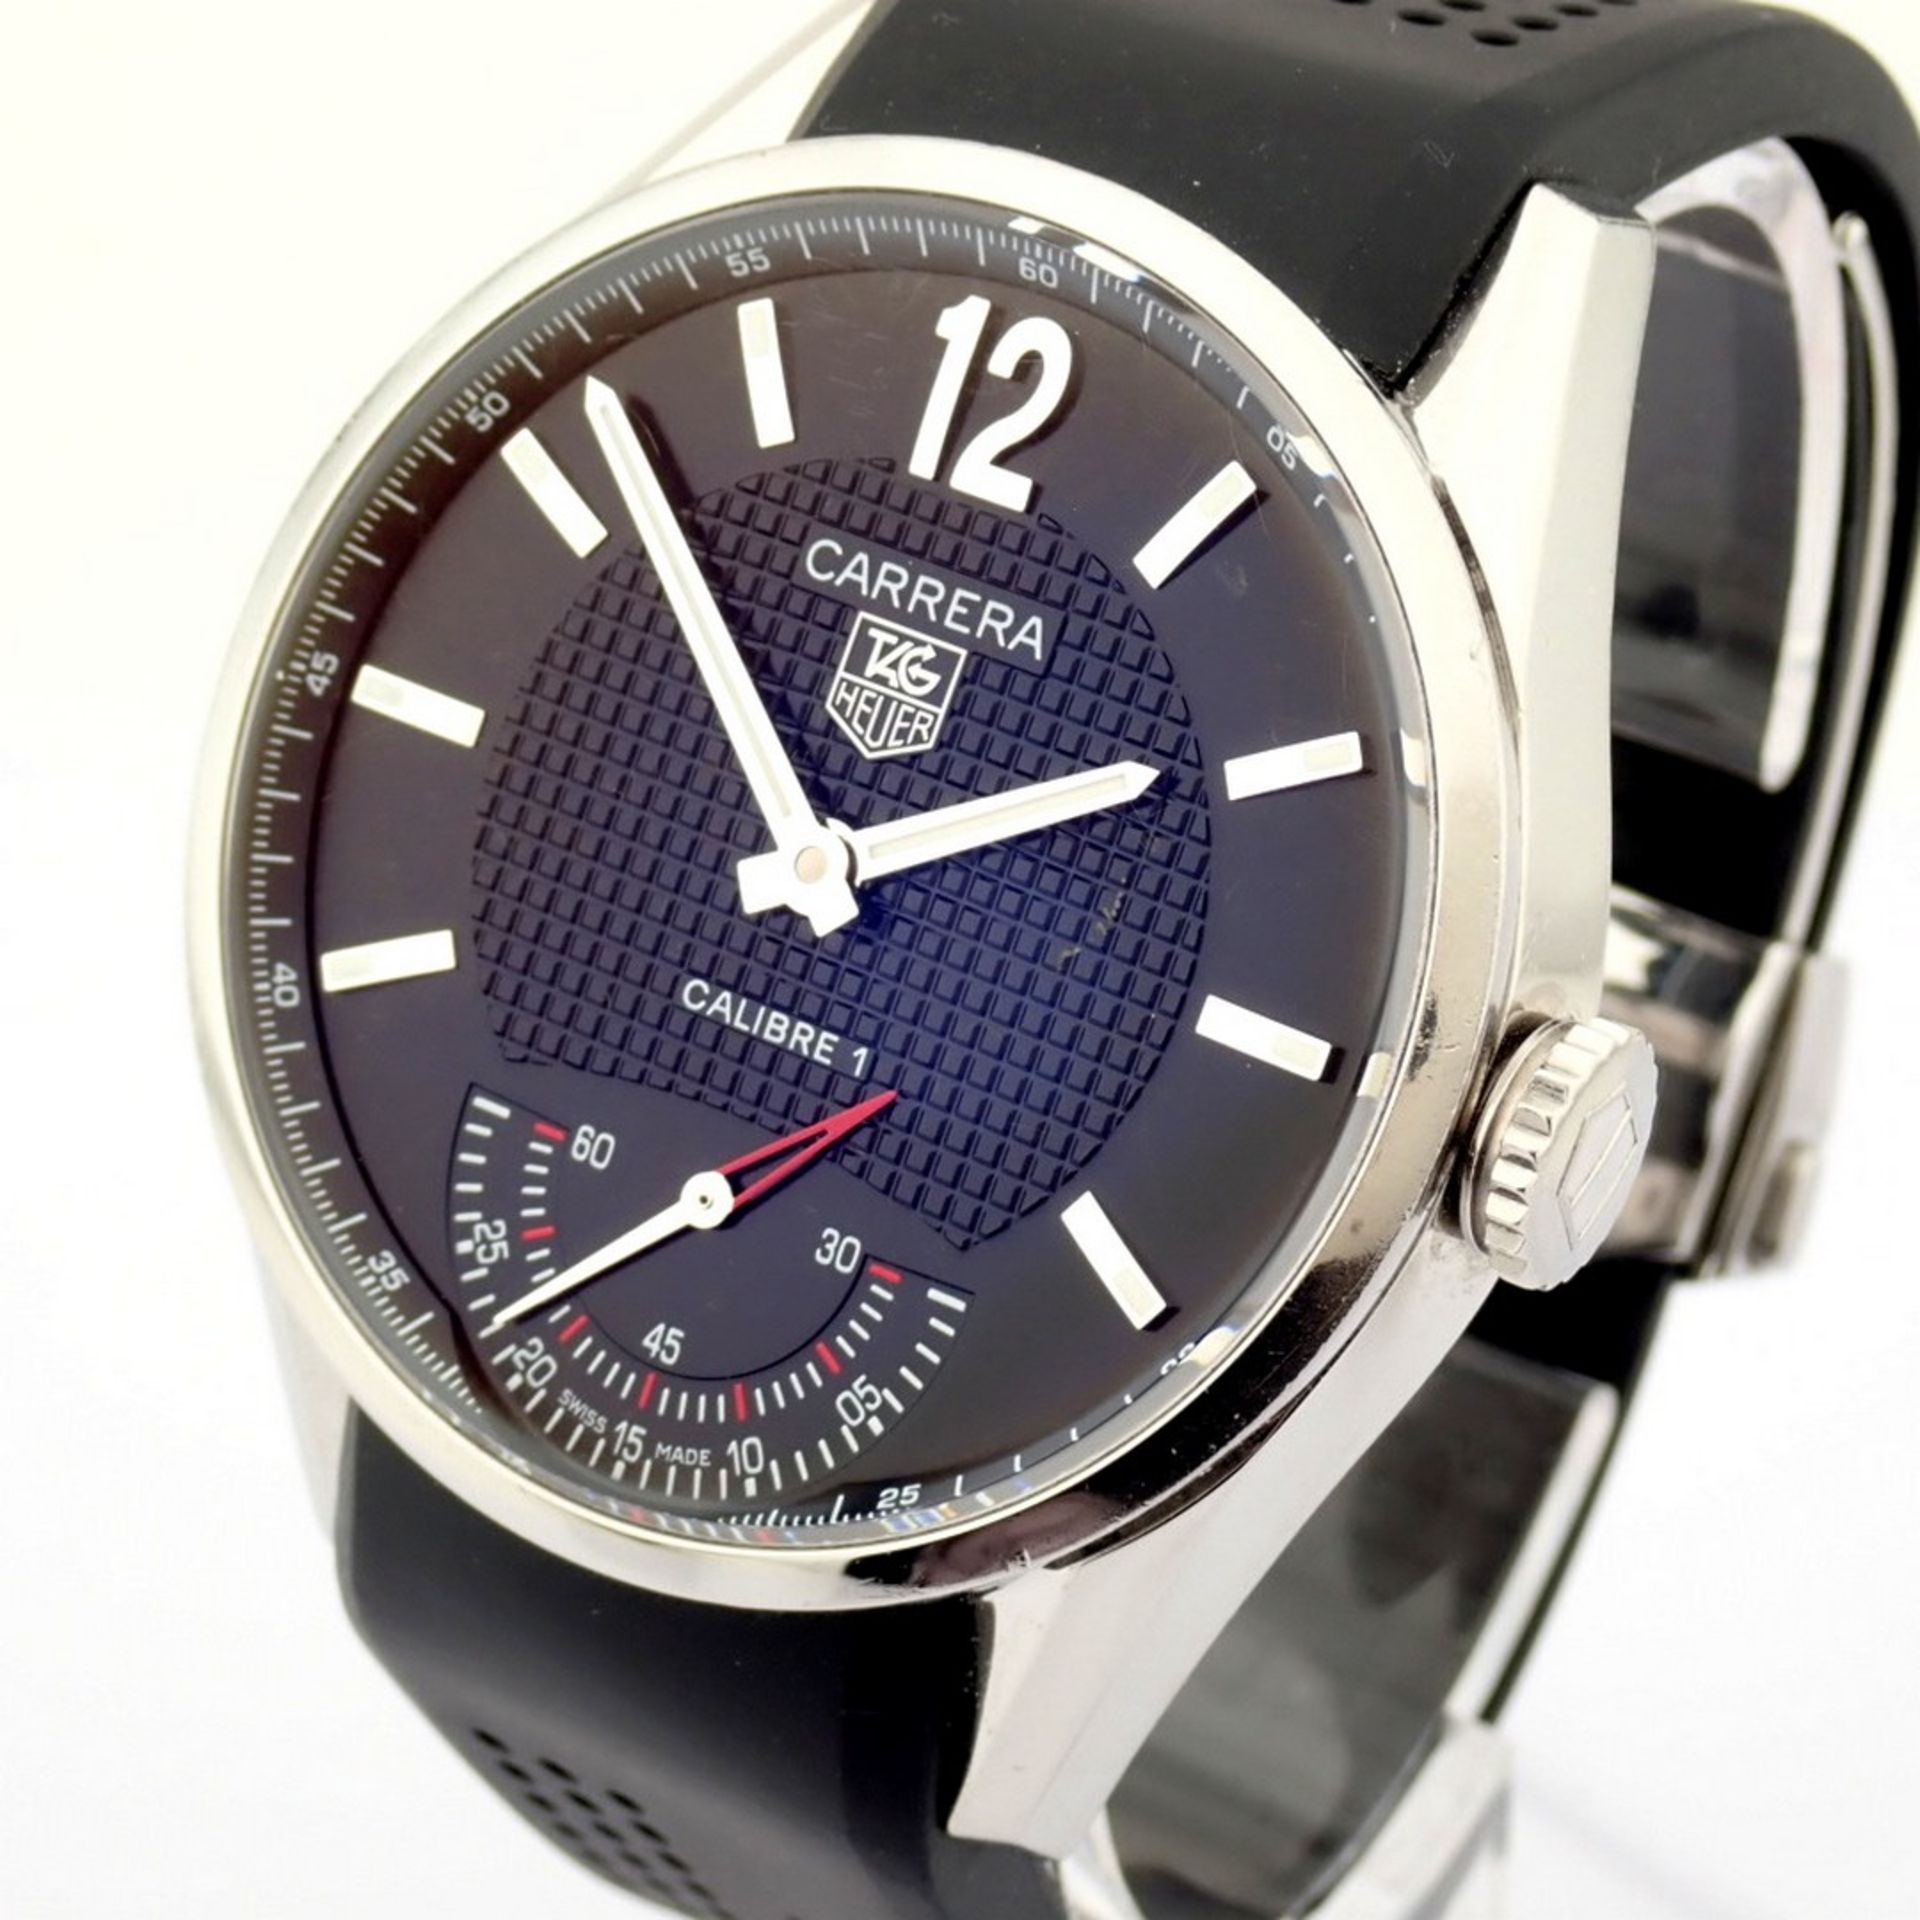 TAG Heuer / Carrera WV3010 Calibre 1 - Gentlmen's Steel Wrist Watch - Image 7 of 11